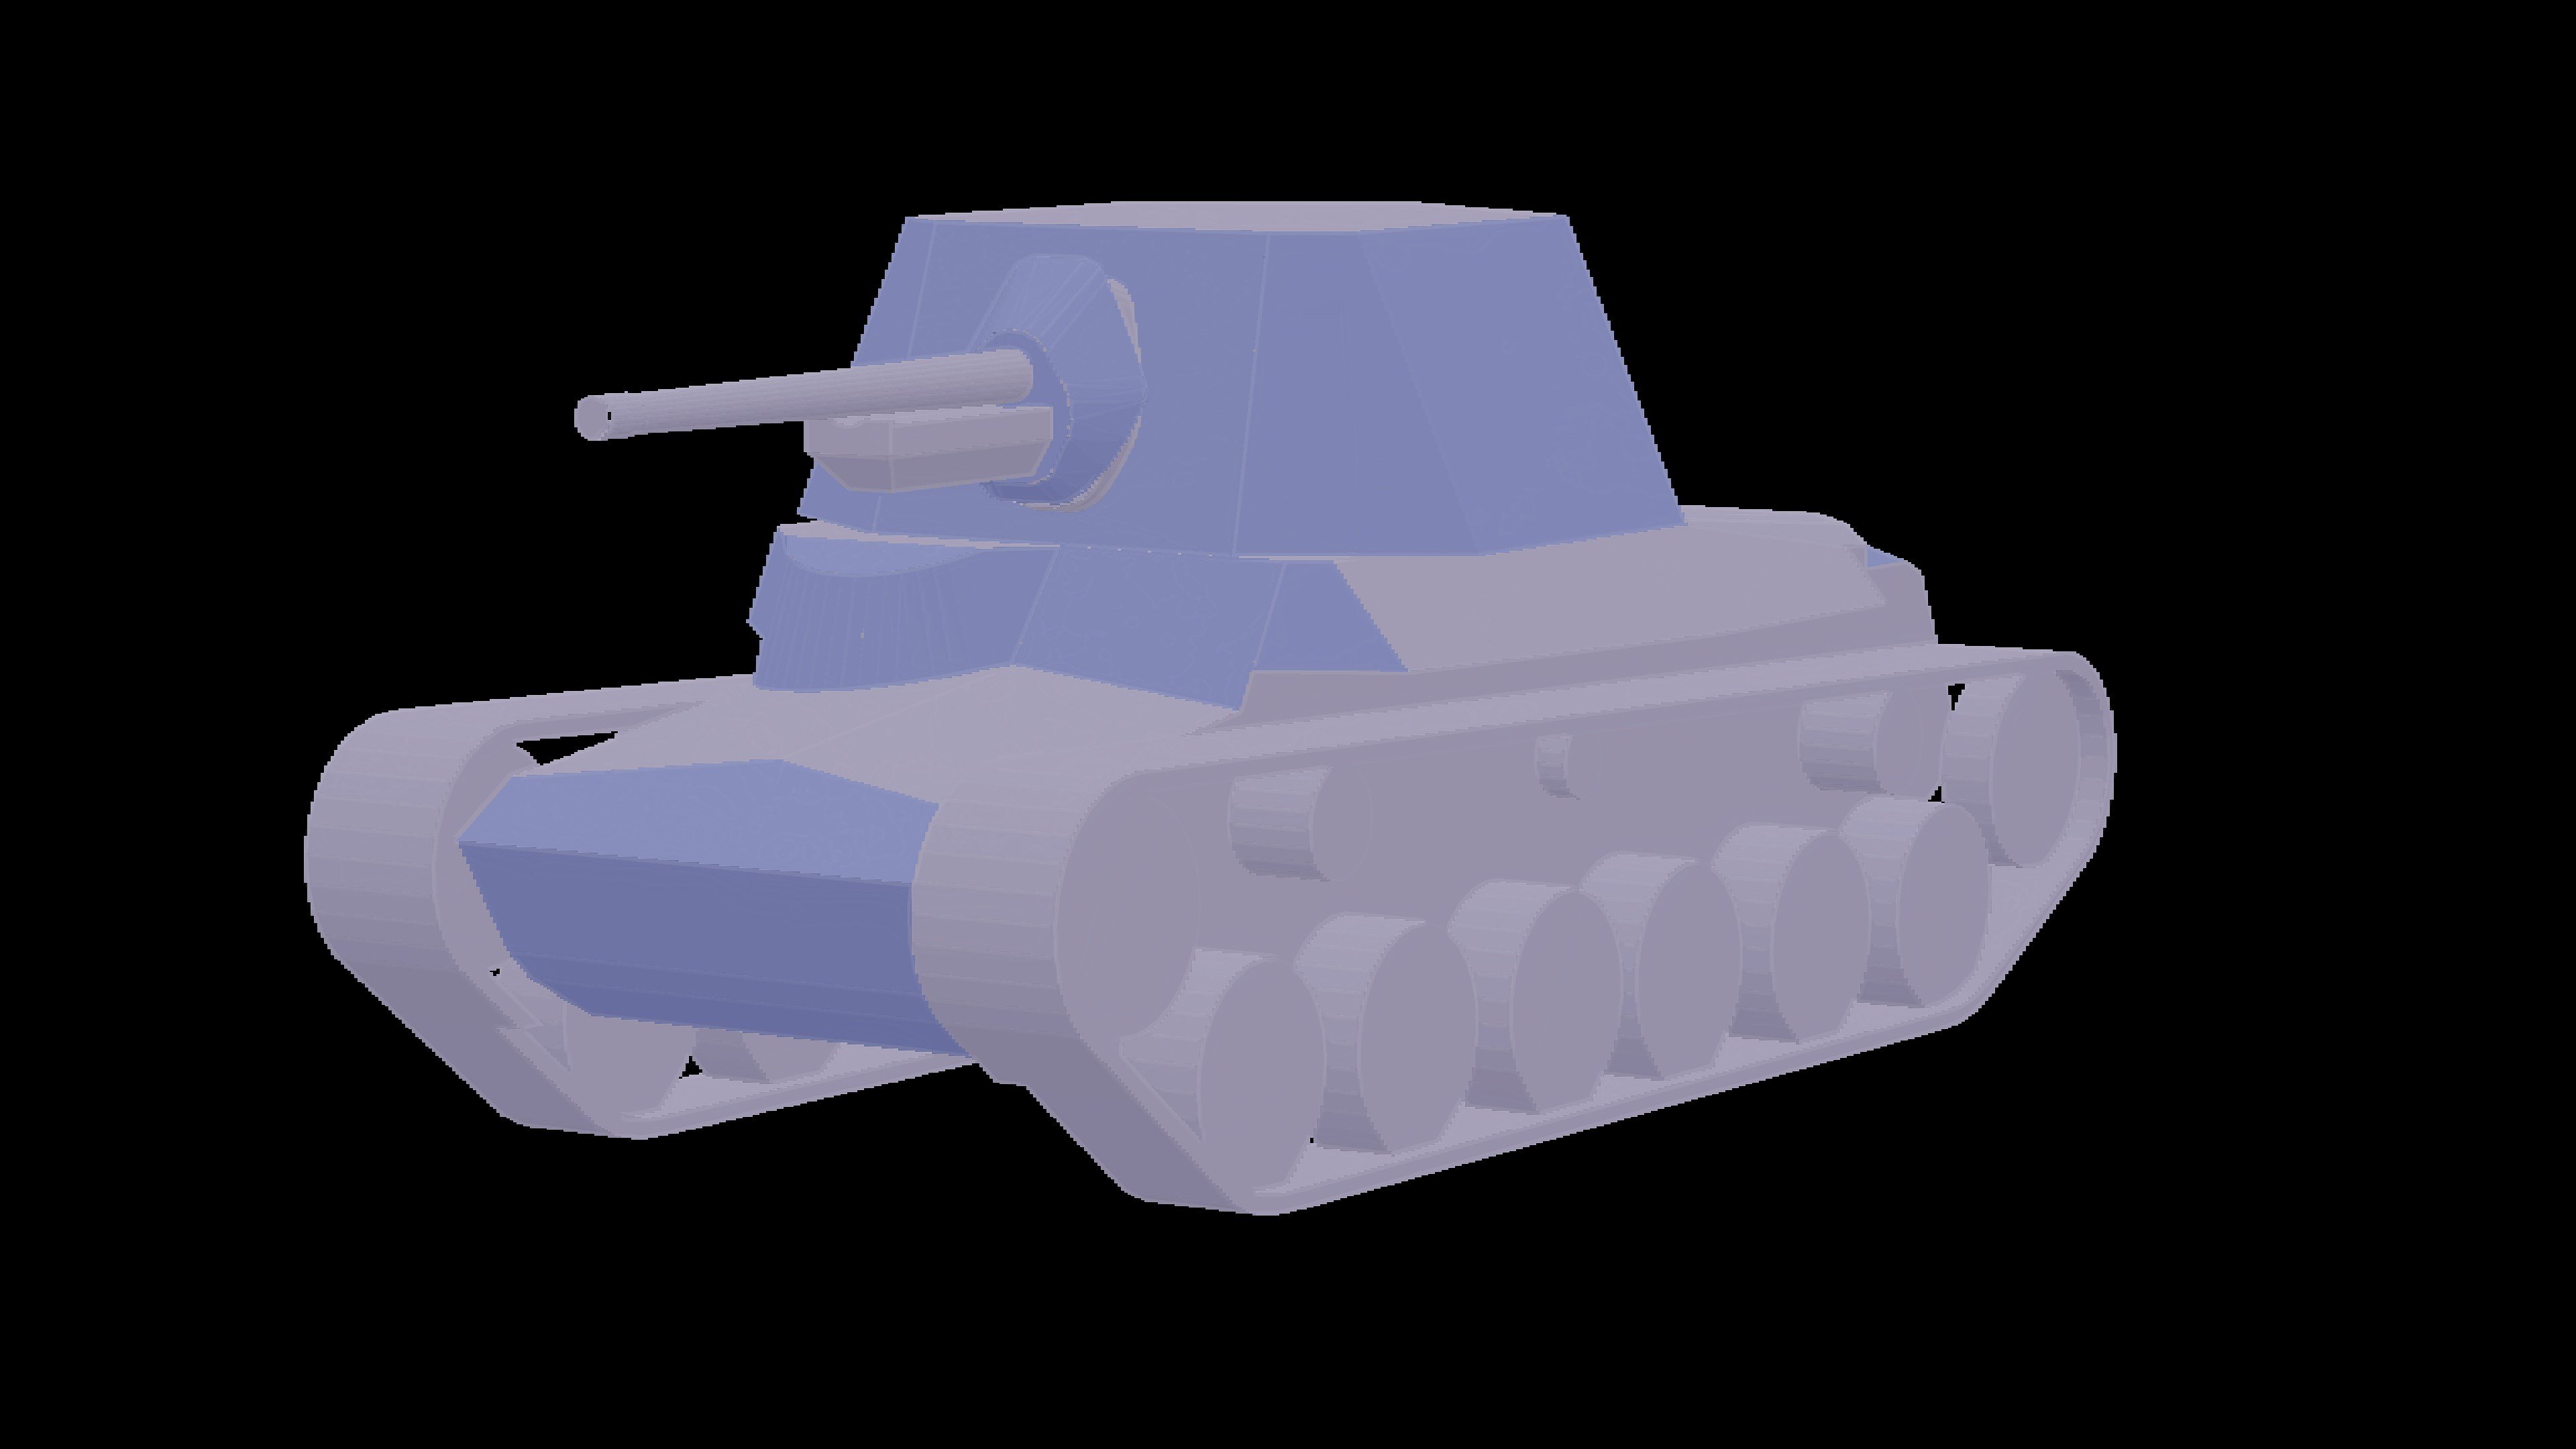 Type 3 Ho-Ni III - Armor Viewer